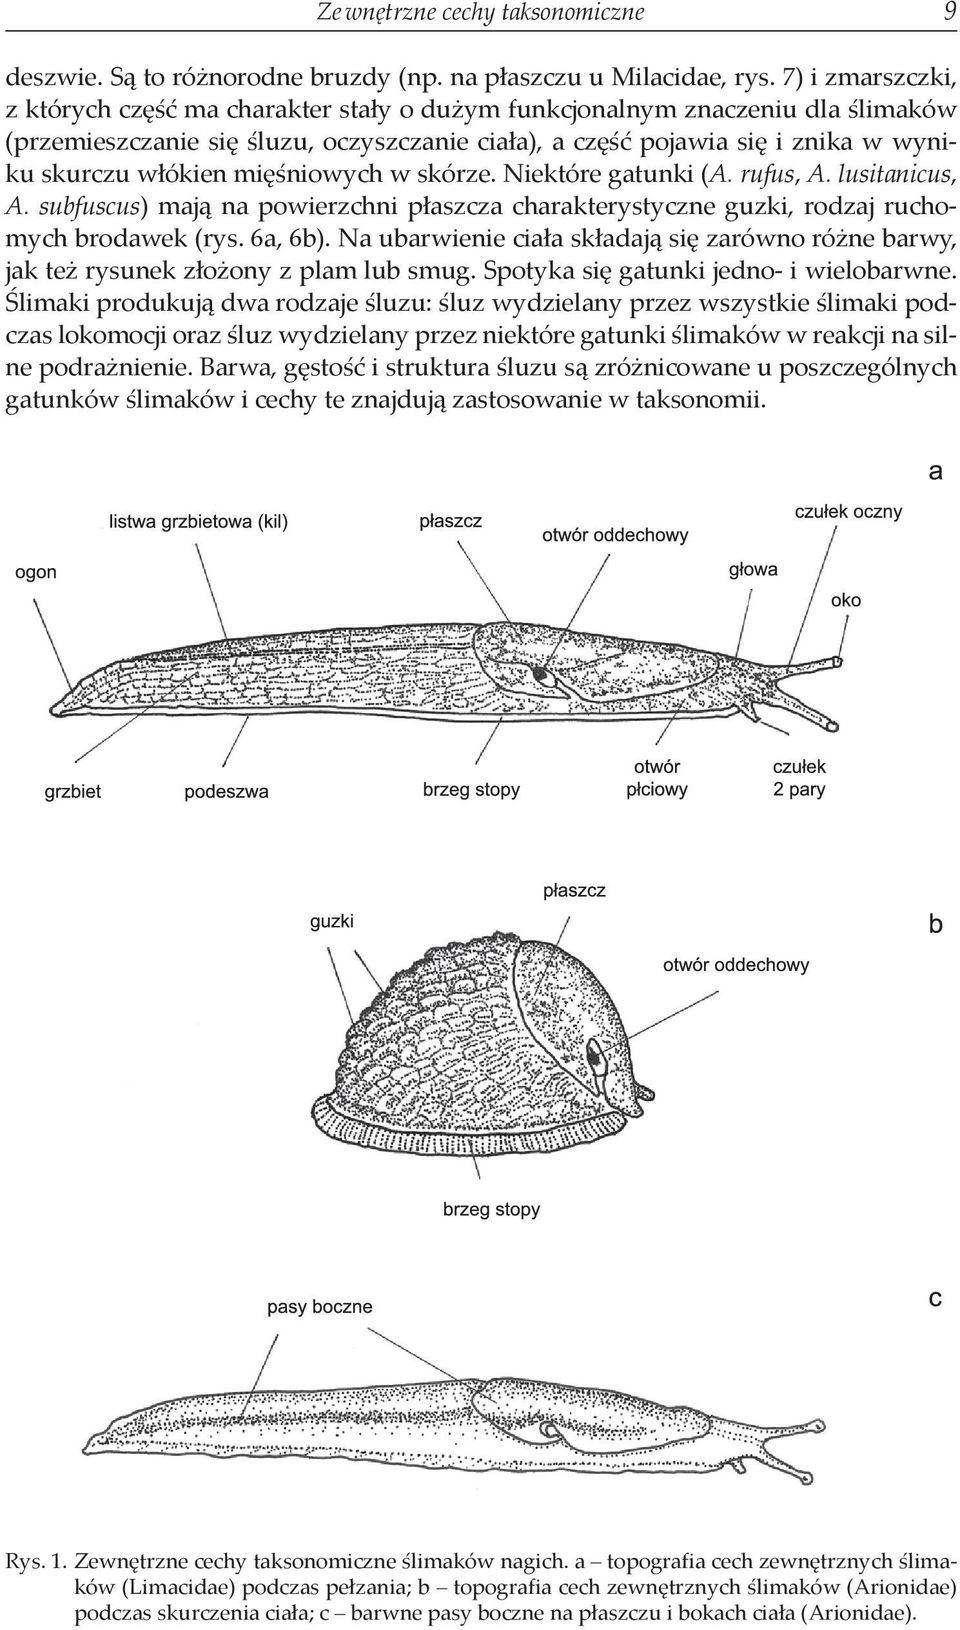 mięśniowych w skórze. Niektóre gatunki (A. rufus, A. lusitanicus, A. subfuscus) mają na powierzchni płaszcza charakterystyczne guzki, rodzaj ruchomych brodawek (rys. 6a, 6b).